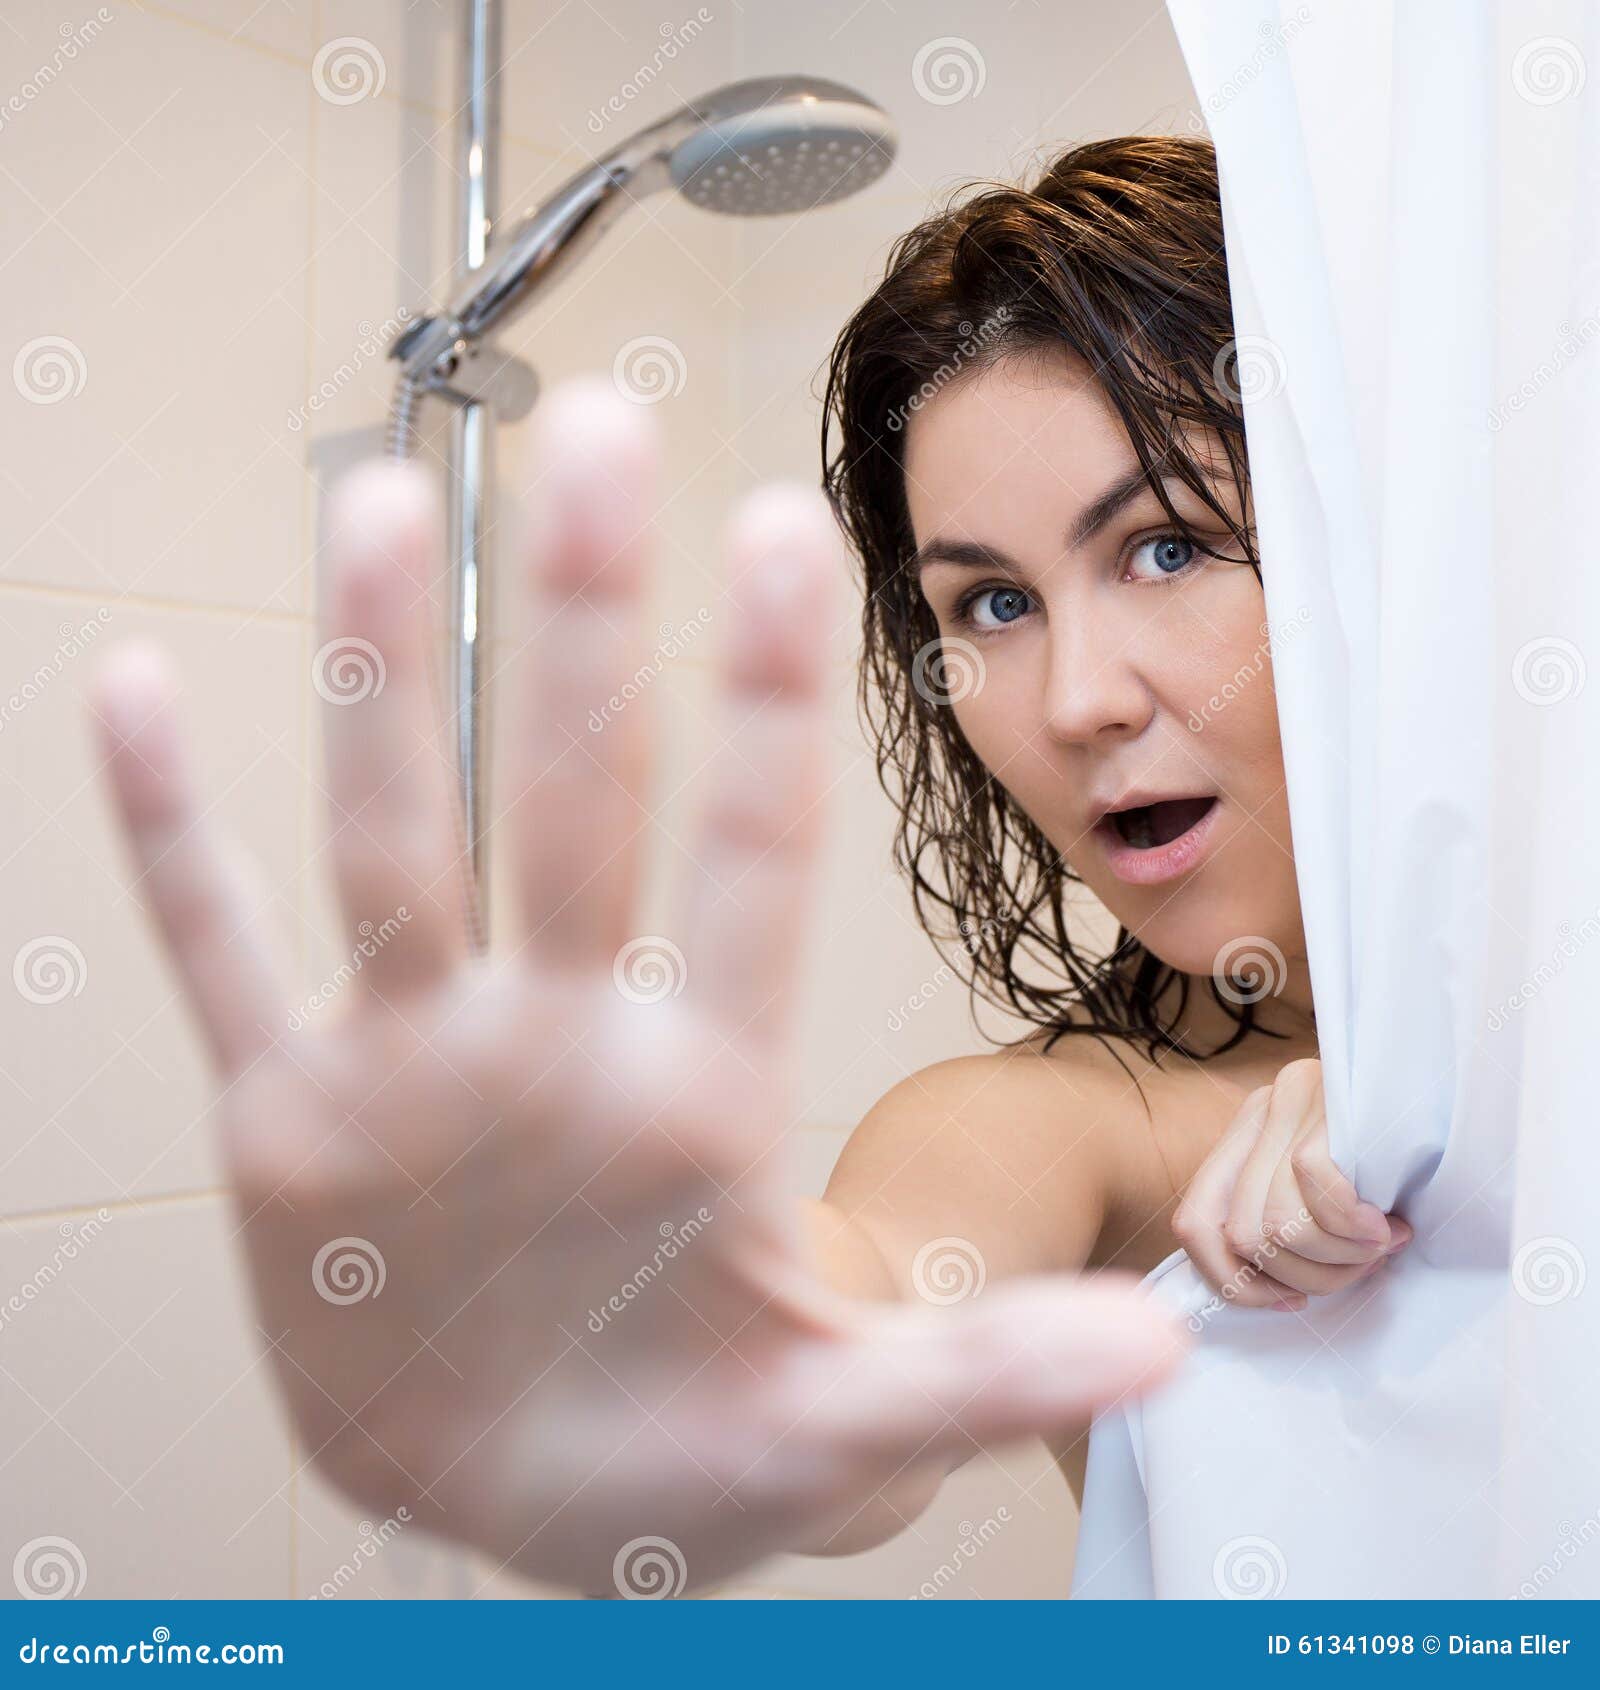 Толстая мама в душе. Девушка в ванной за шторкой. Женщина в душе прикрывается. Взрослые женщины в душе. Девушка в душе за шторкой.